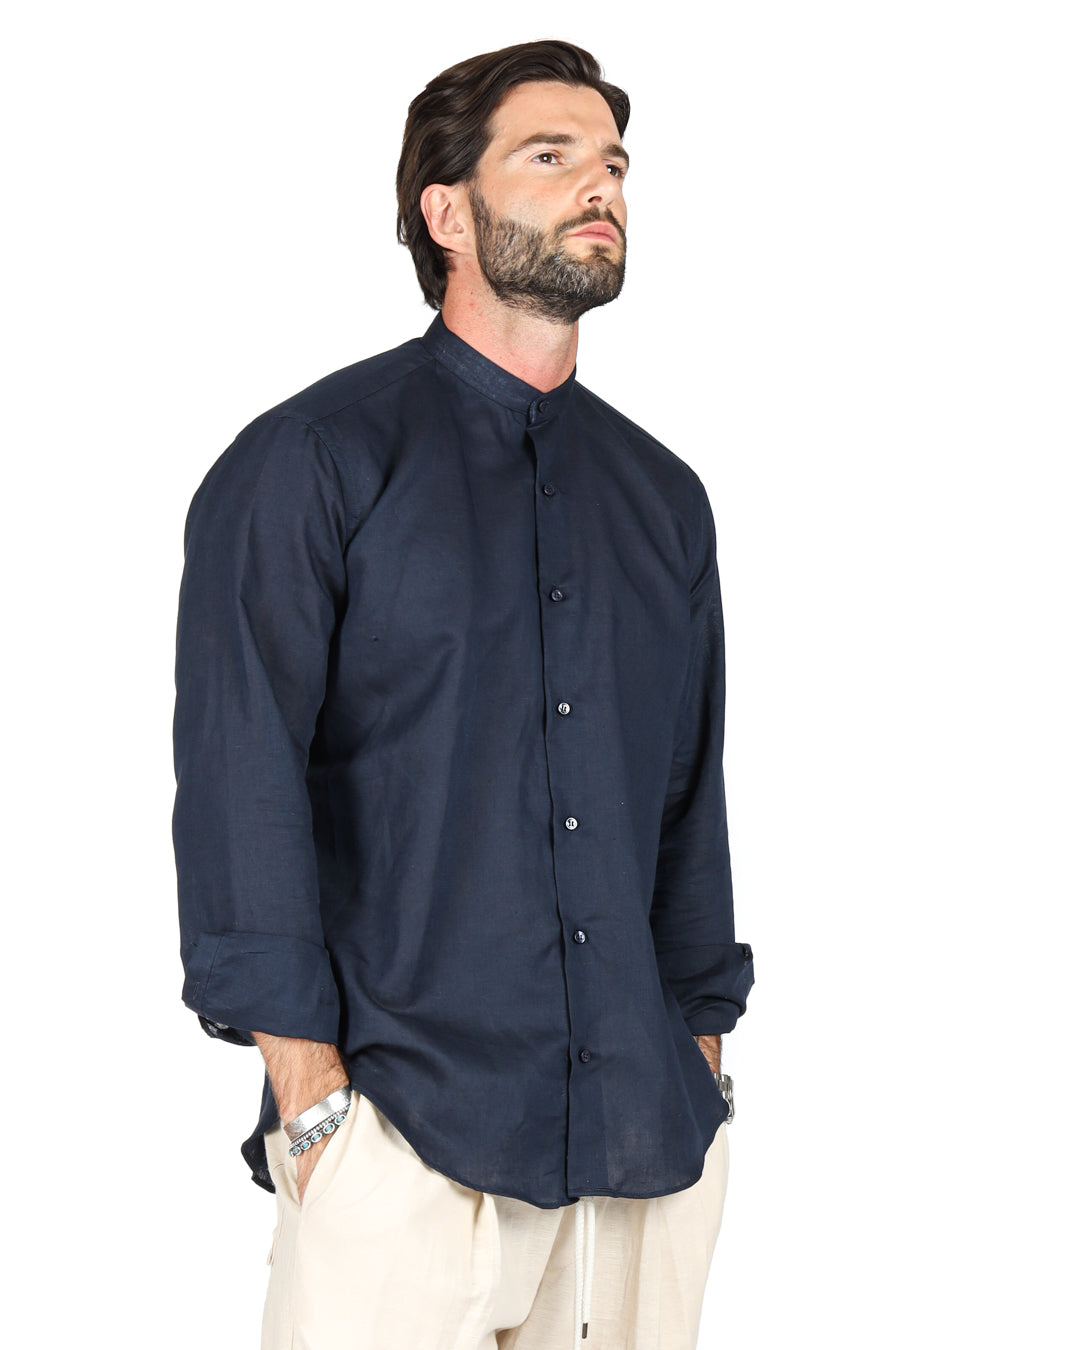 Positano - Blue Korean linen shirt